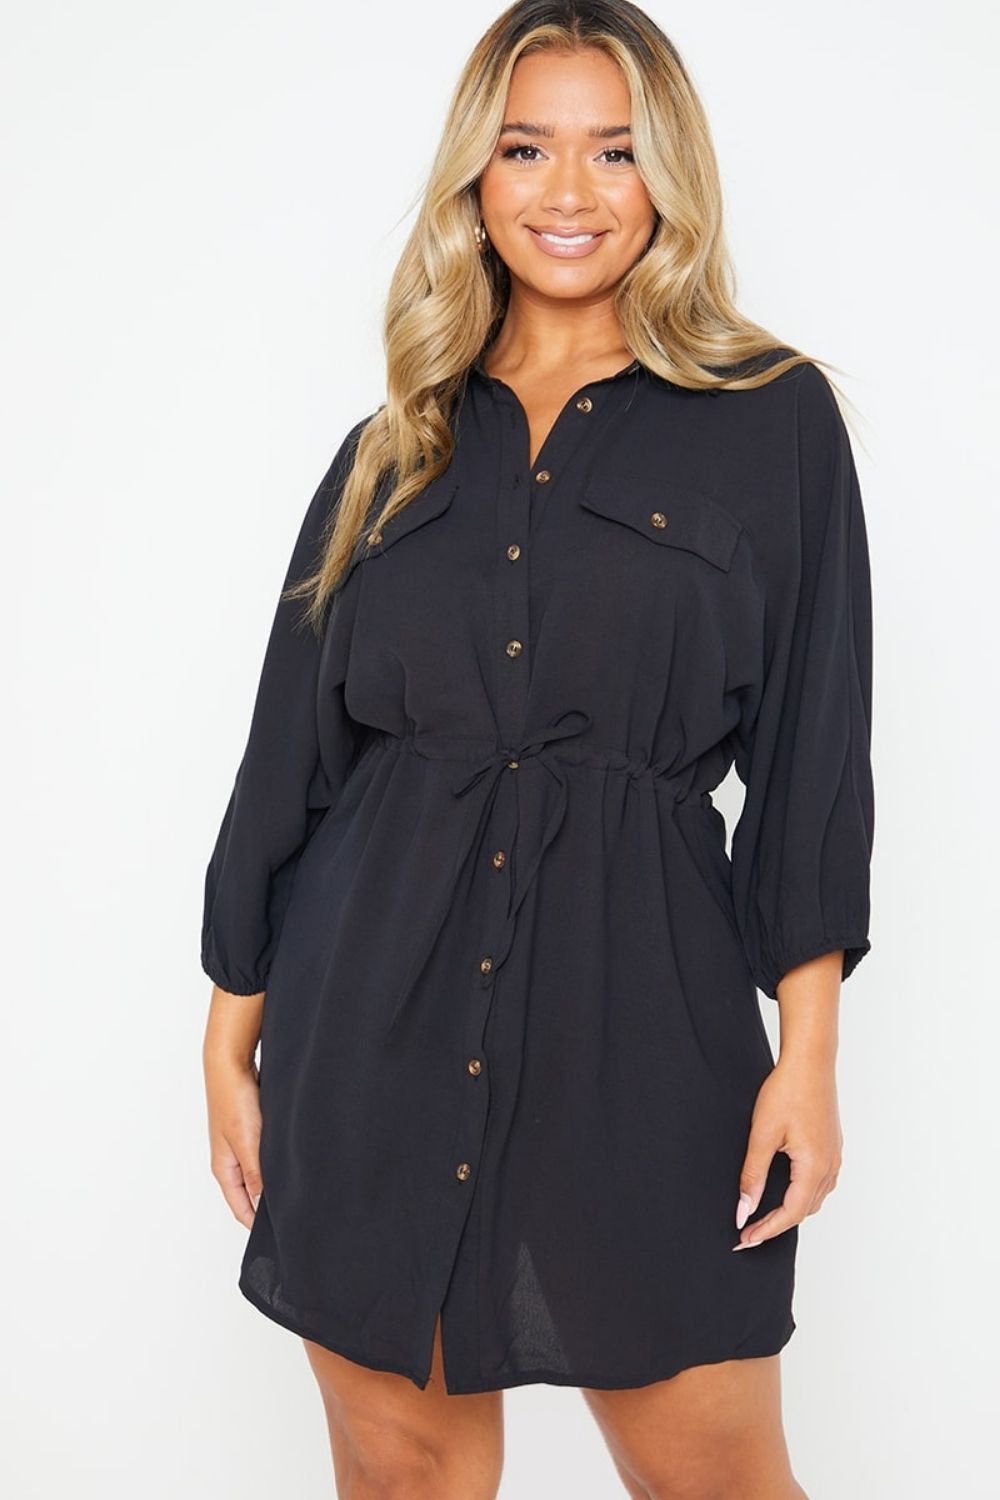 Black Dress - Shirt Dress - Button-Up Dress - Dress With Pockets - Lulus